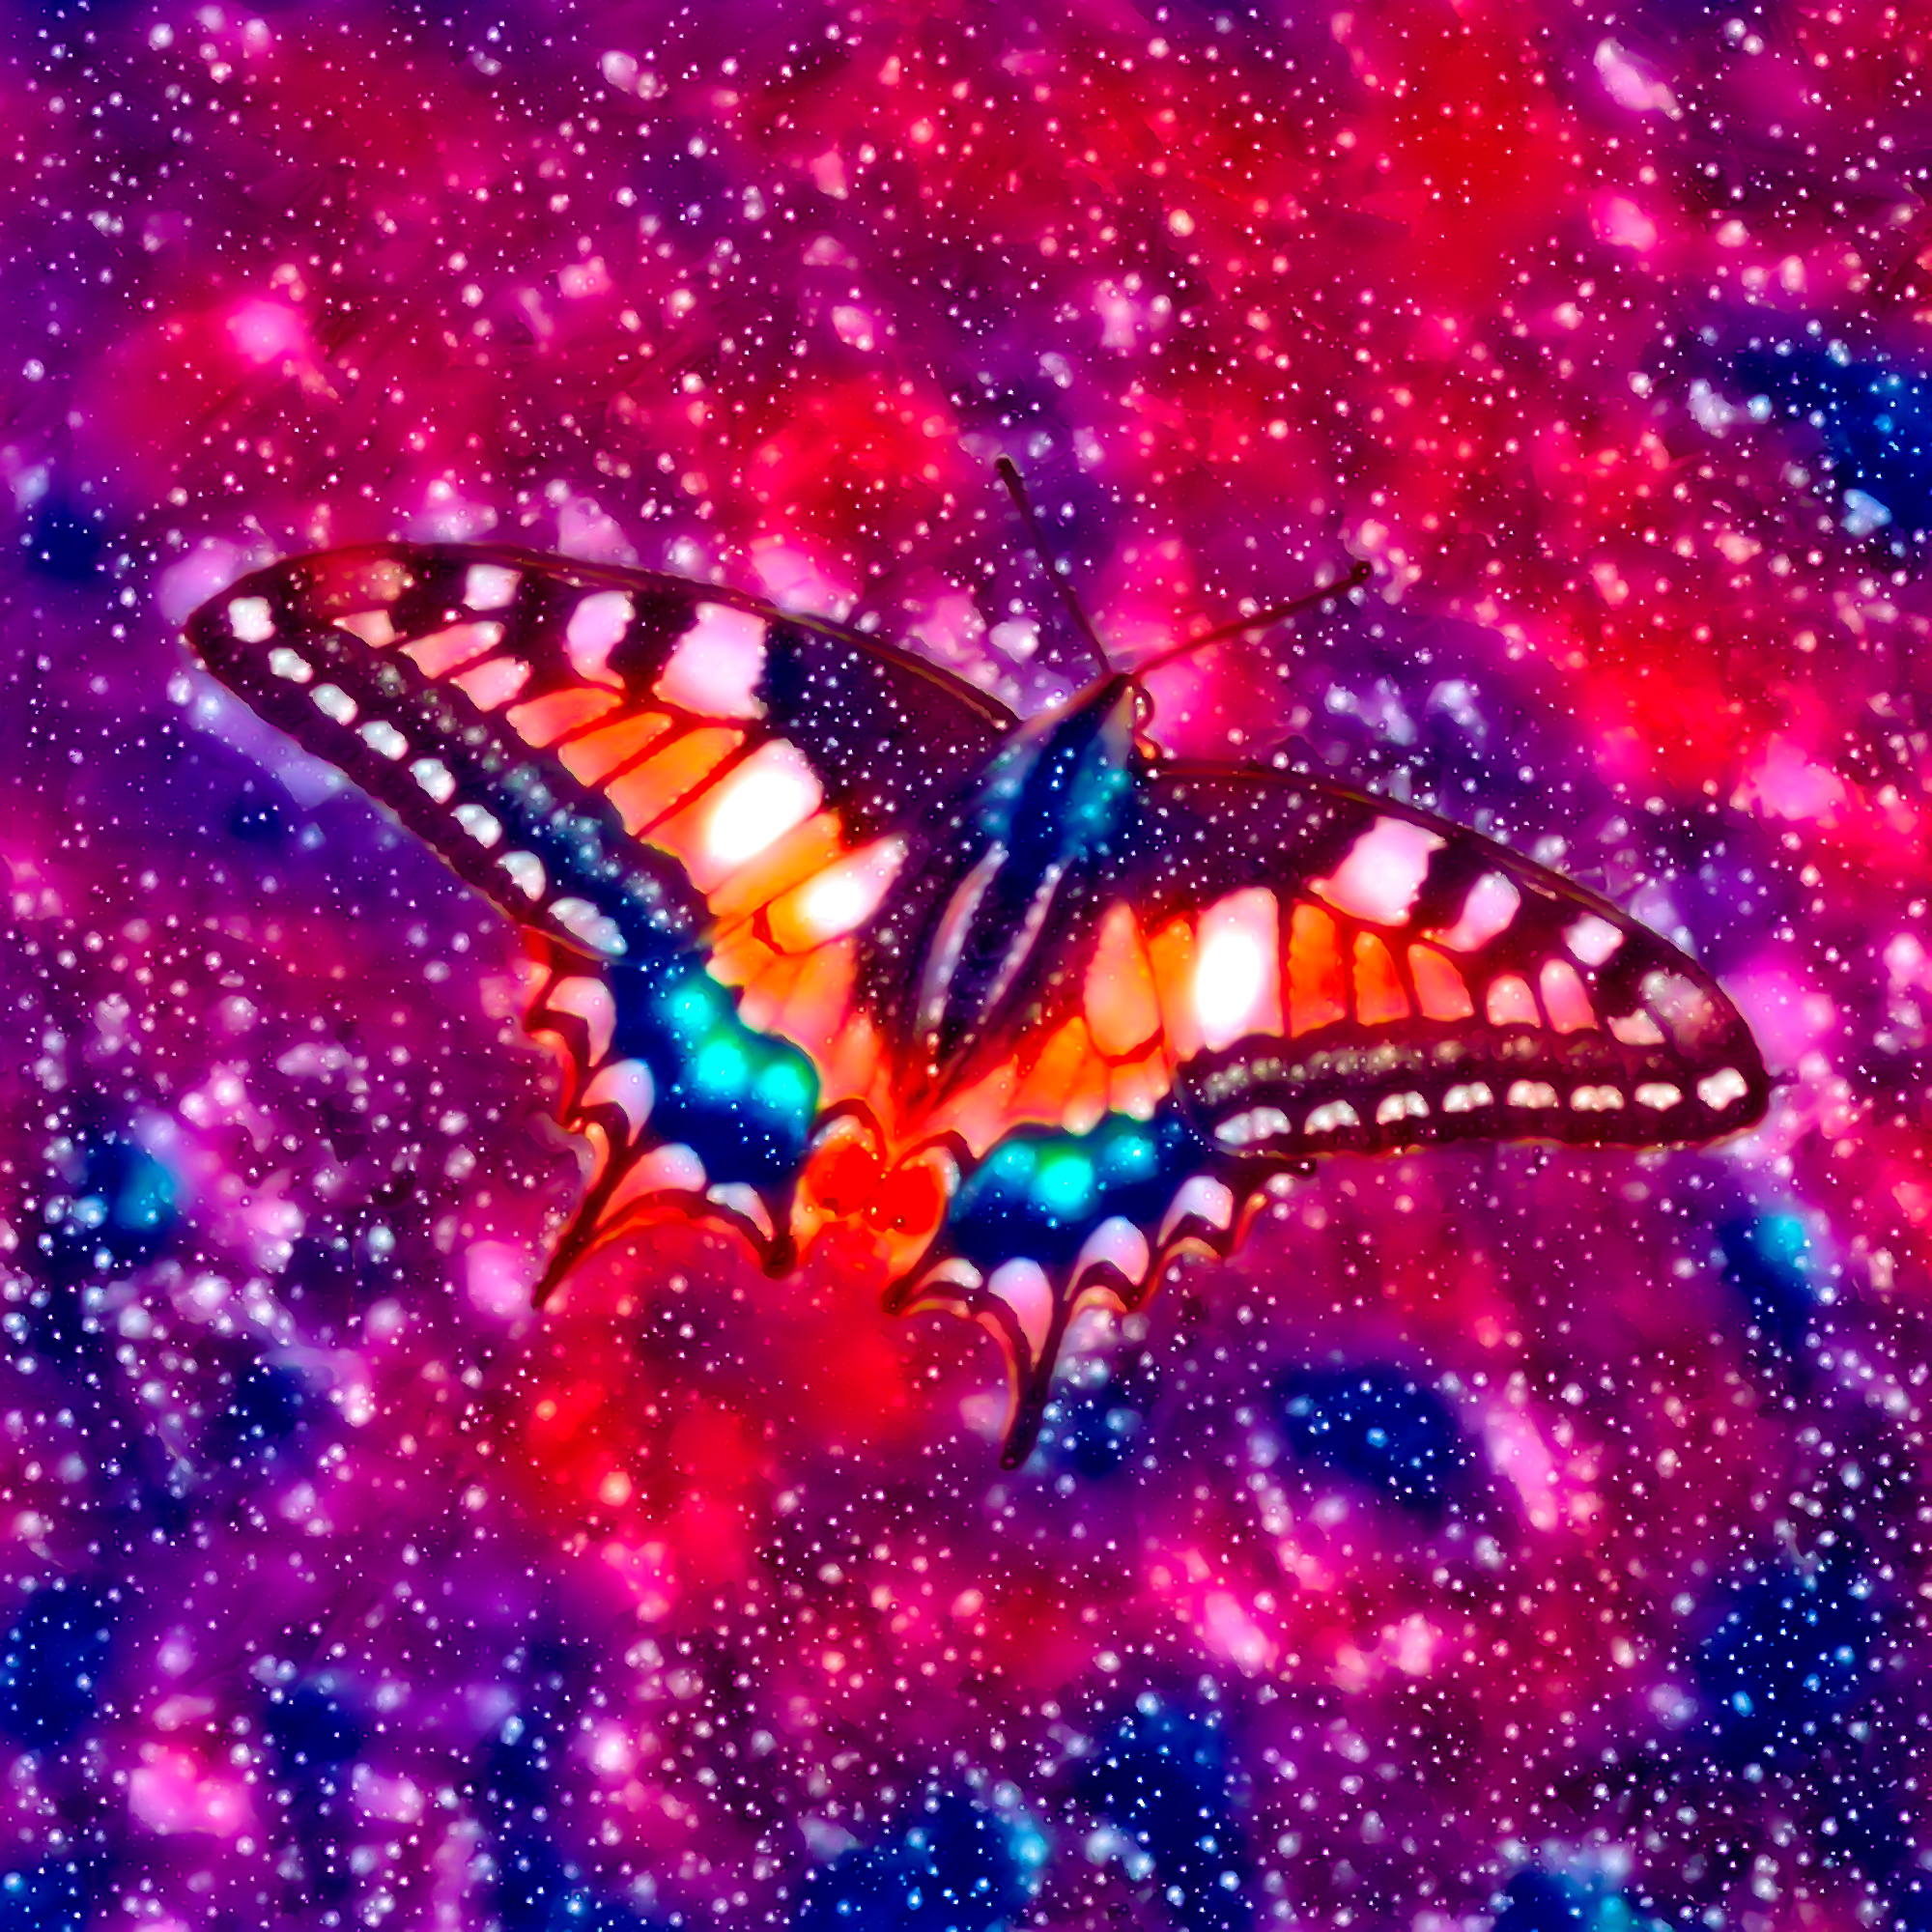 スペース蝶々とキラキラと輝く宇宙